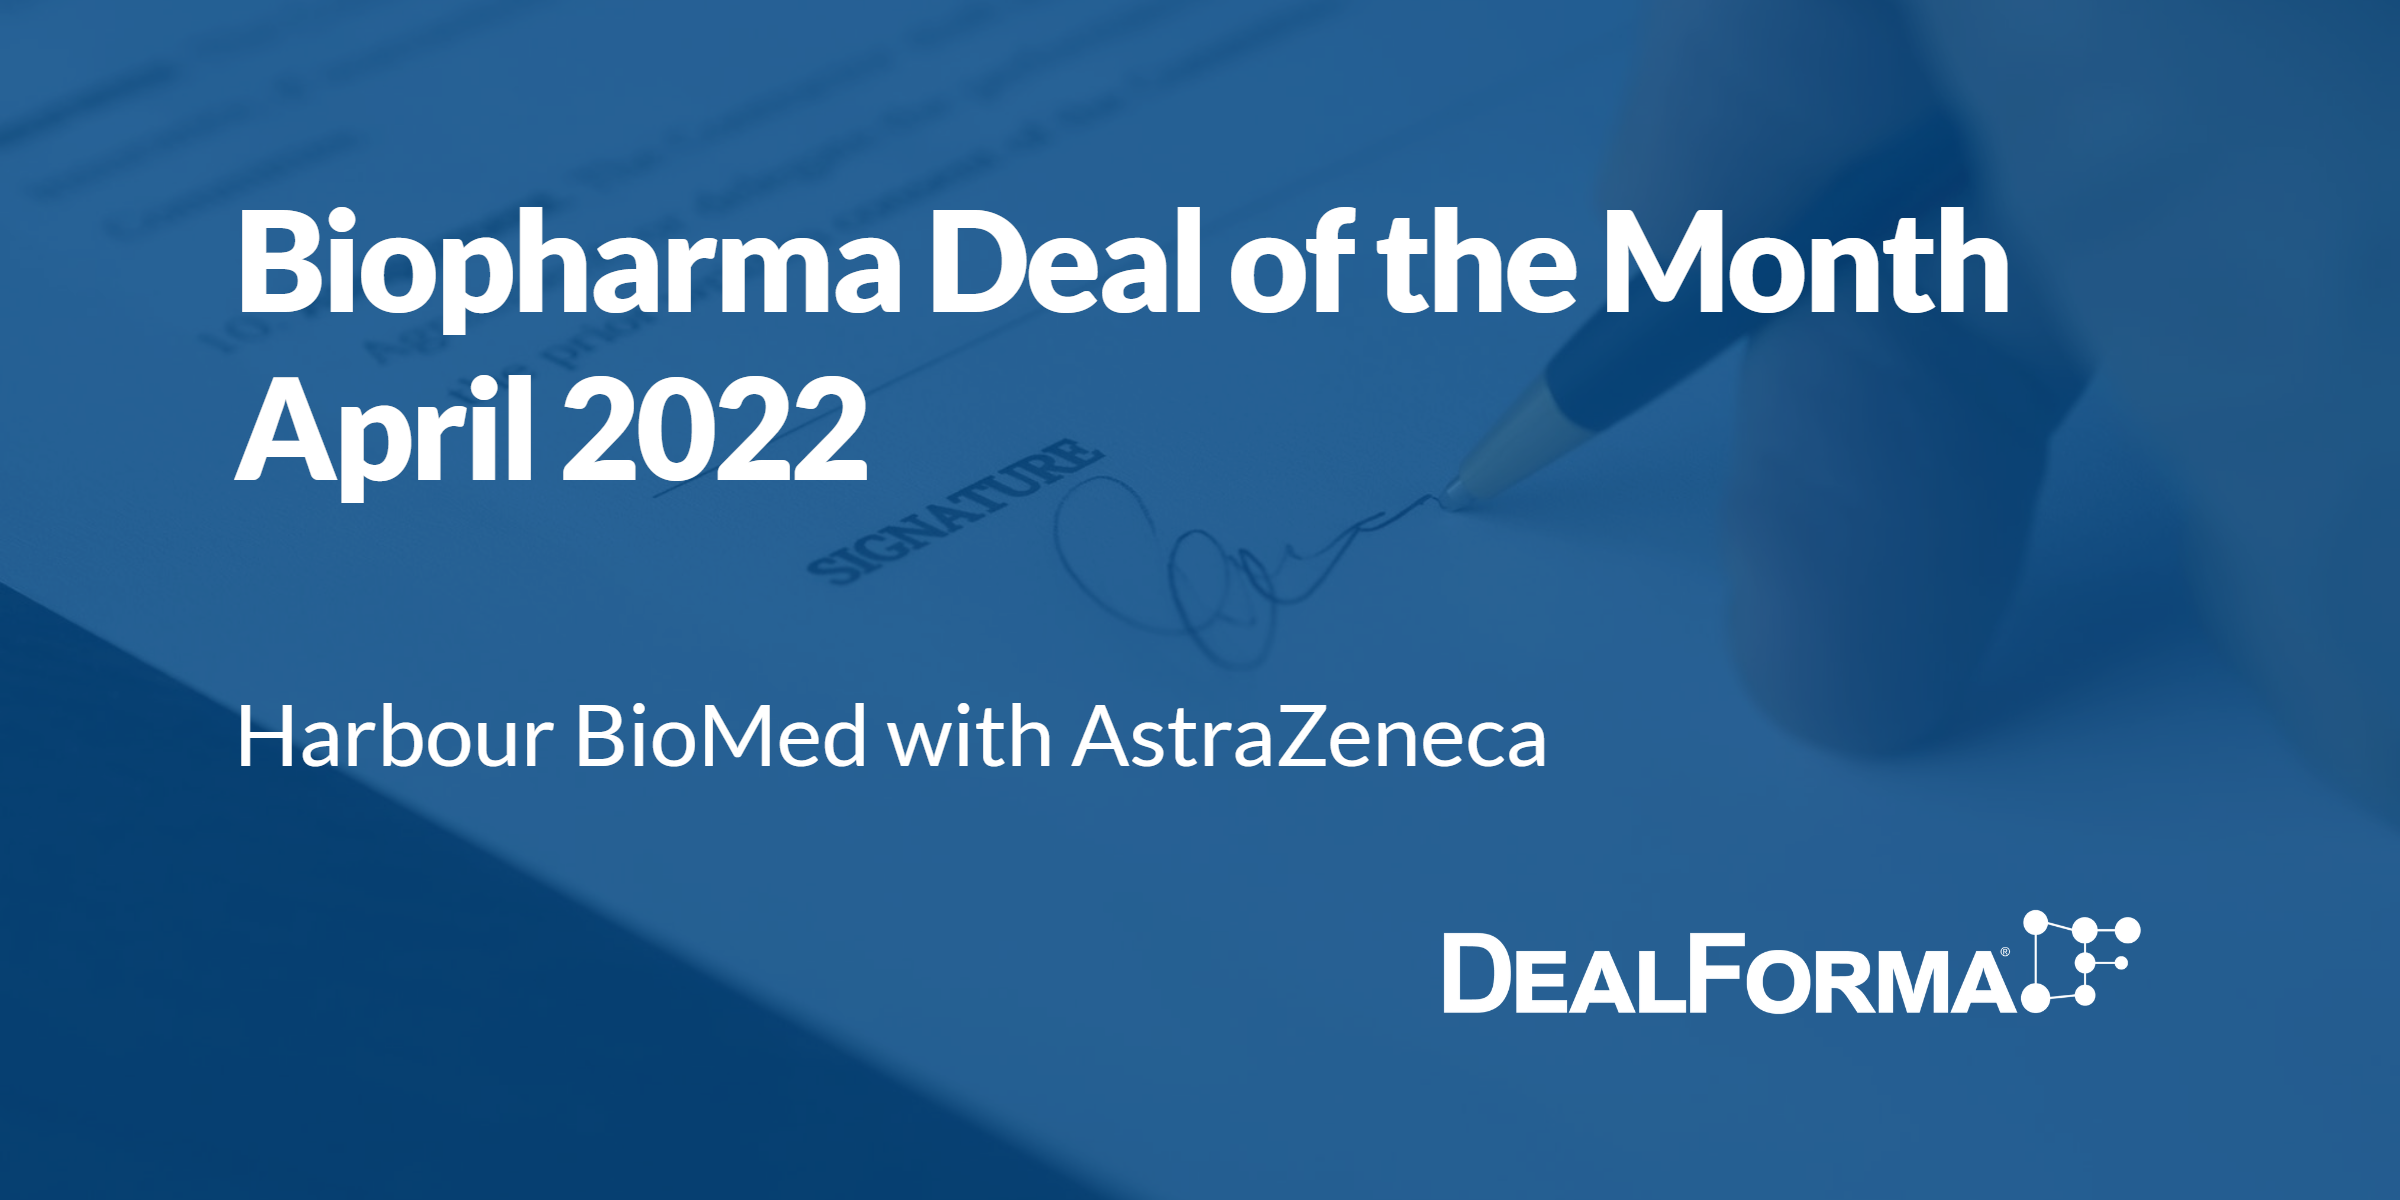 Top biopharma deal upfront April 2022